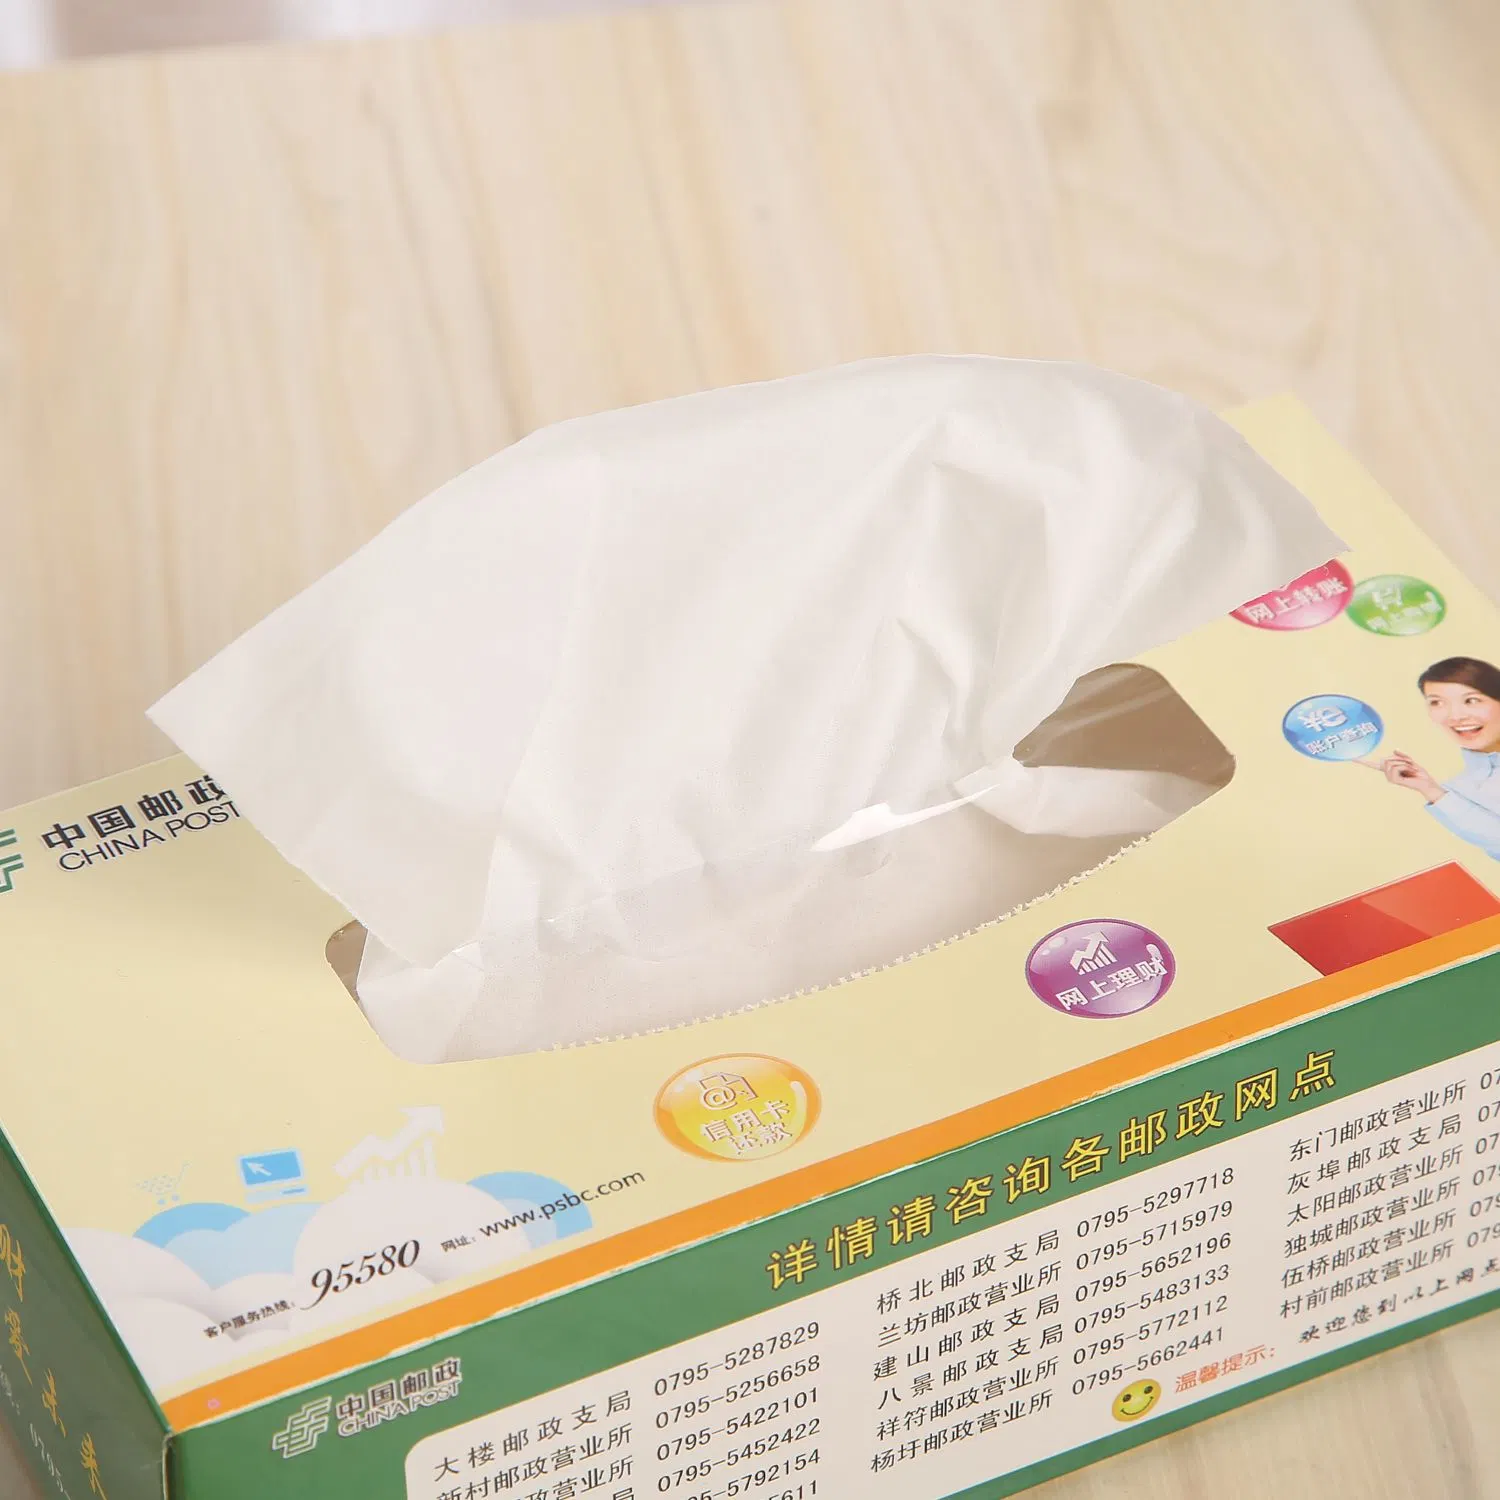 Super Soft Free Sample Box Facial Tissue Paper Clear Paper (Супер мягкая непрозрачная бумага для бумаги для лице